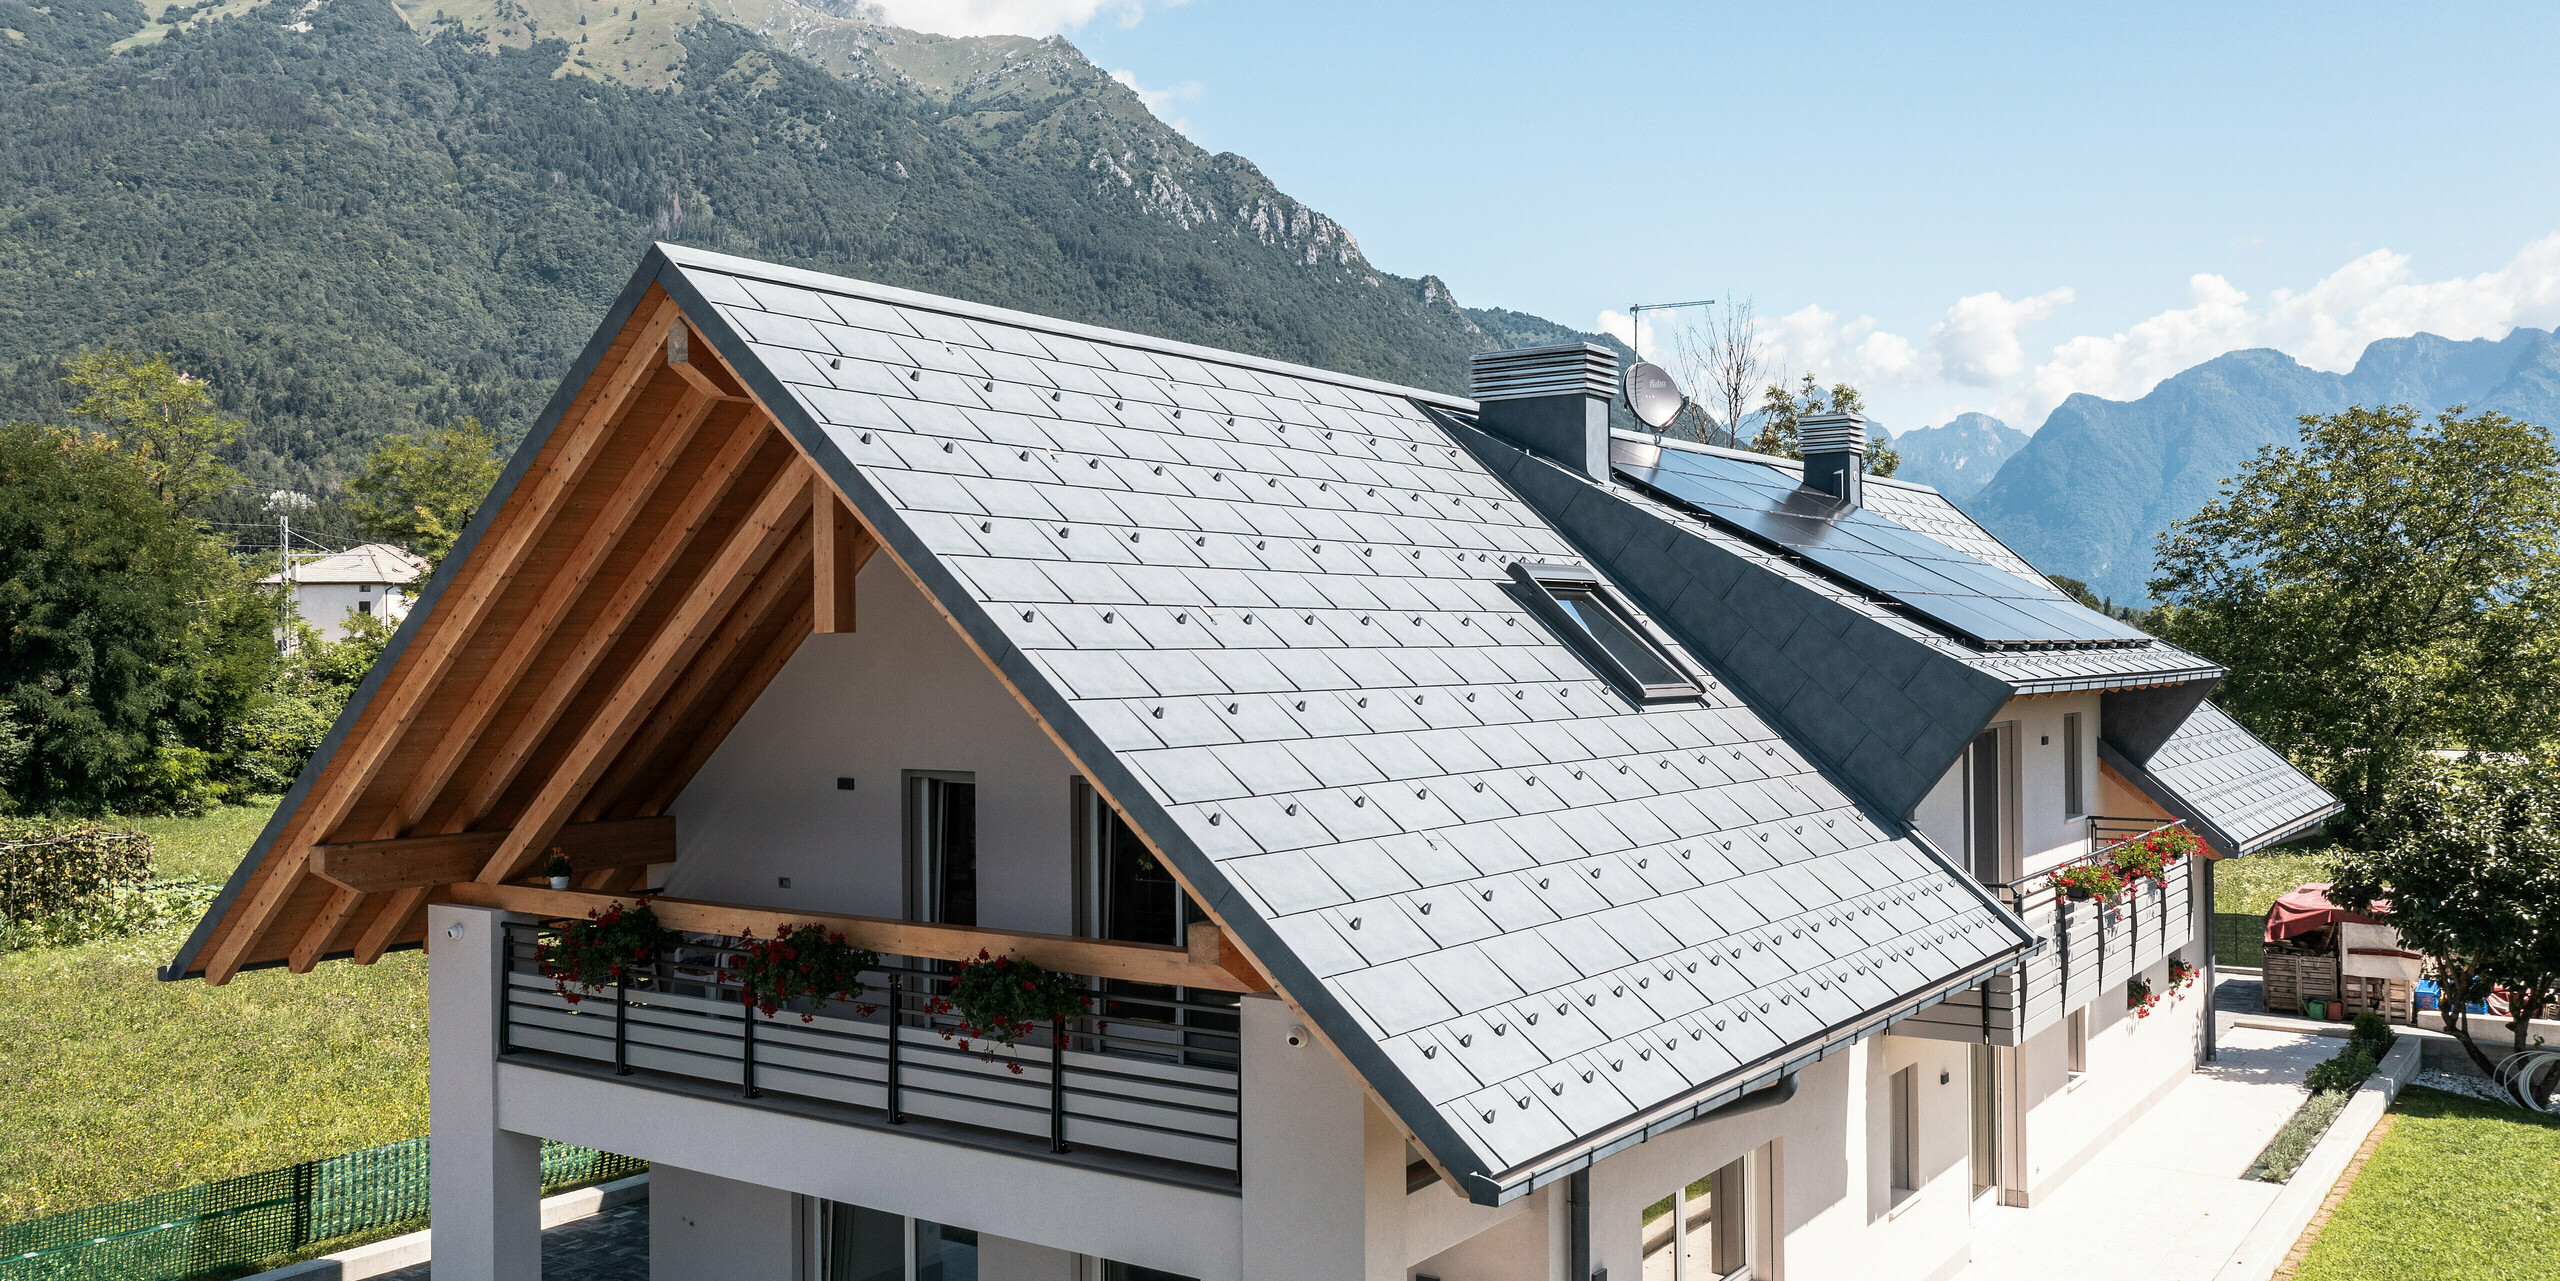 Idylický rodinný dům v Bellunu vybavený střešními panely PREFA R.16 v antracitové barvě, který stojí uprostřed svěží zelené louky. Čisté linie architektury a moderní střecha vytvářejí nádherný kontrast k tradičním venkovským domům v pozadí a okolní horské krajině.